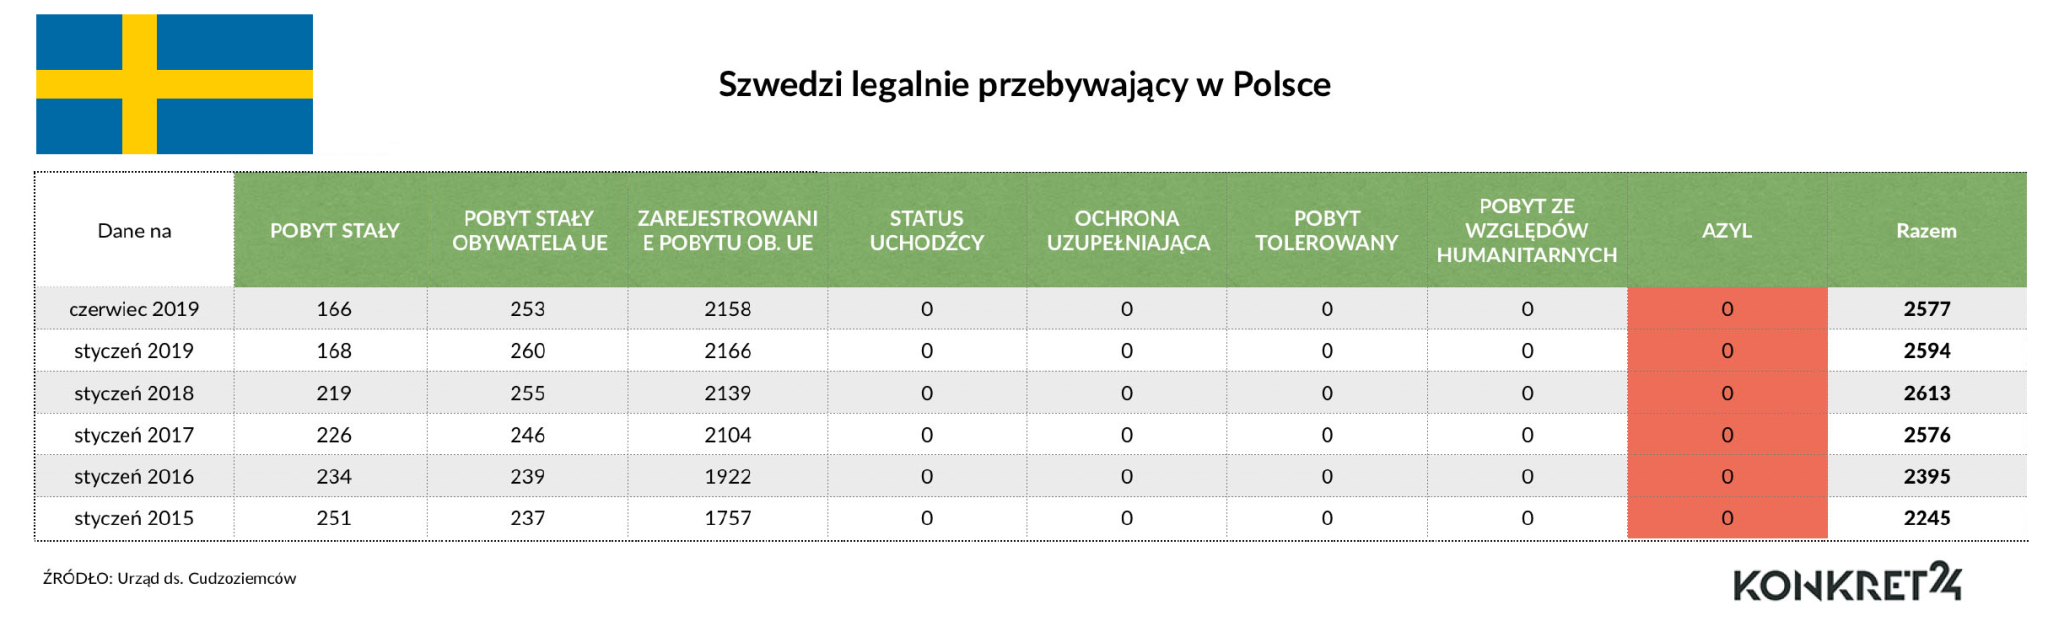 W ostatnich latach w Polsce w ramach azylu nie przebywał żaden obywatel Szwecji